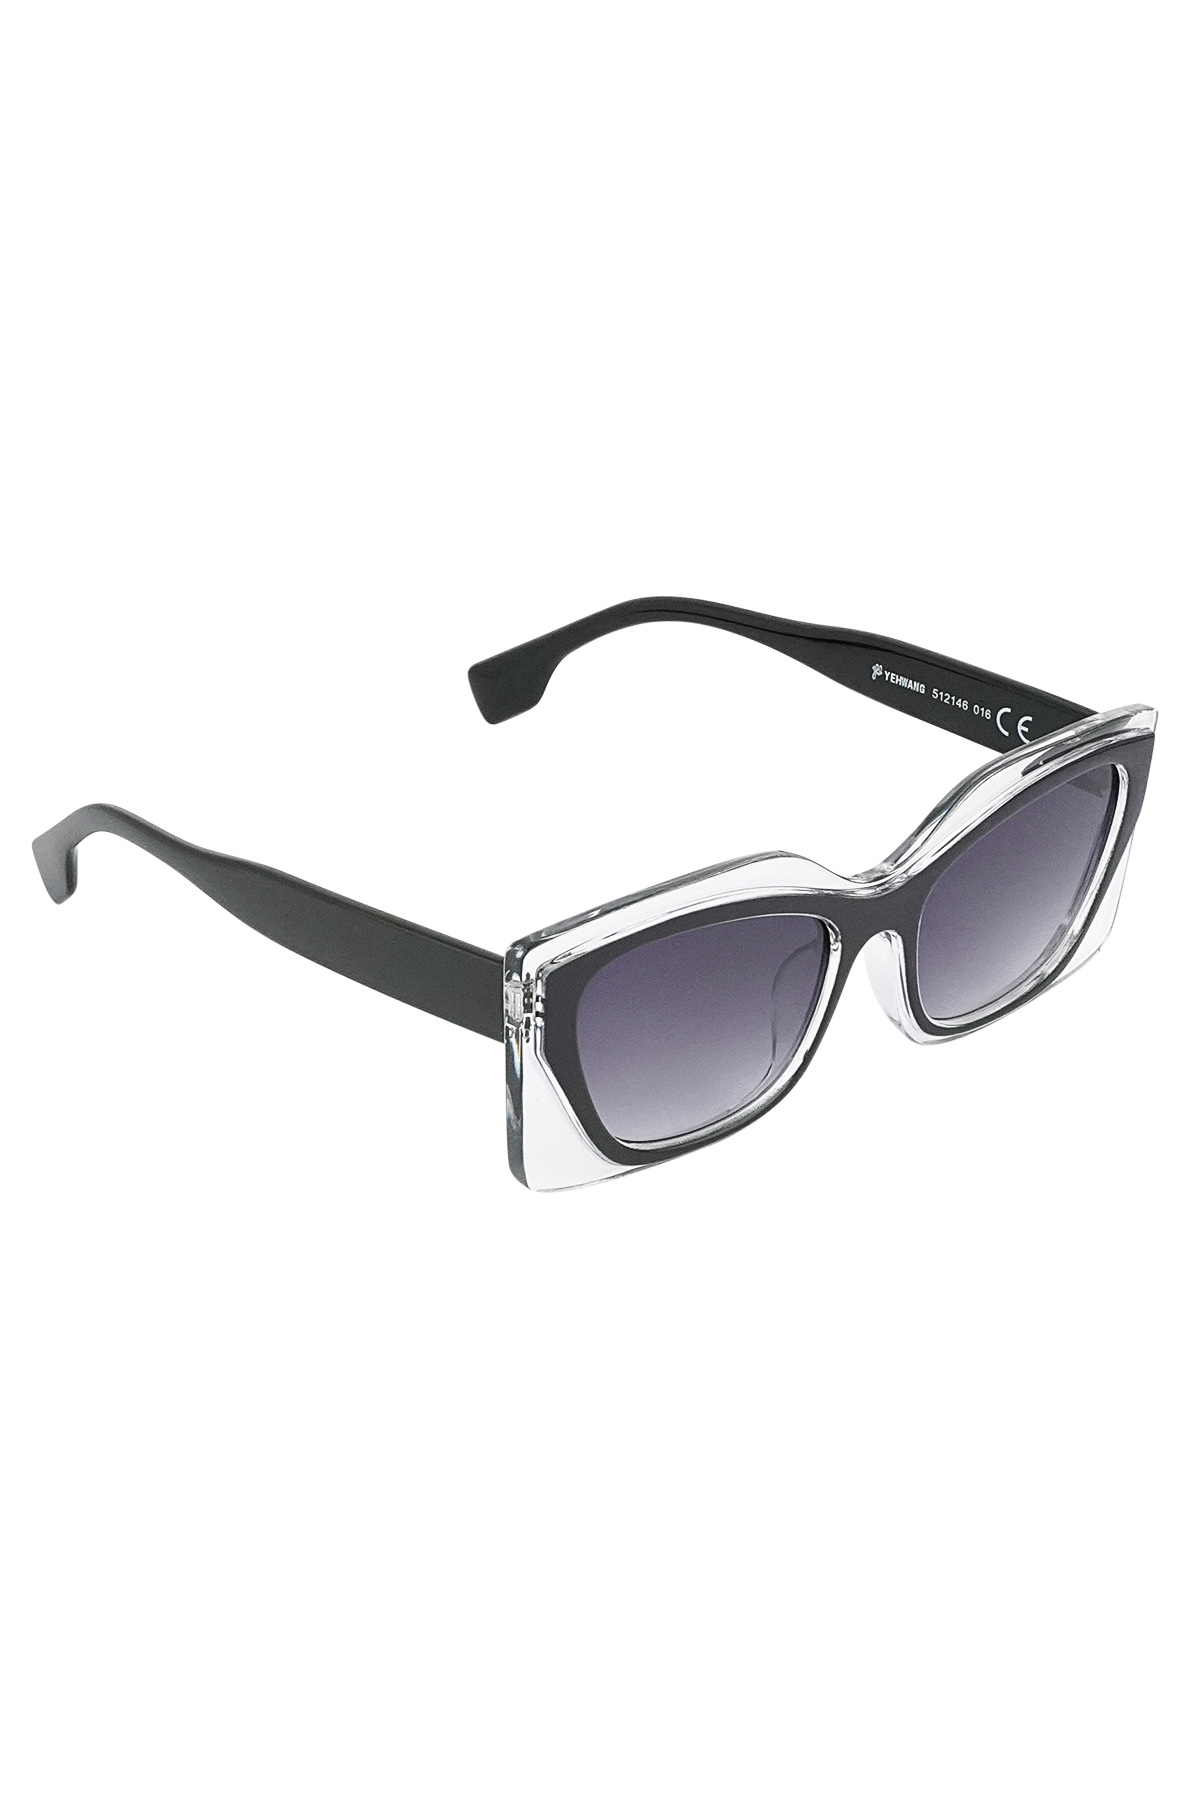 Çift çerçeveli güneş gözlüğü - siyah/gri